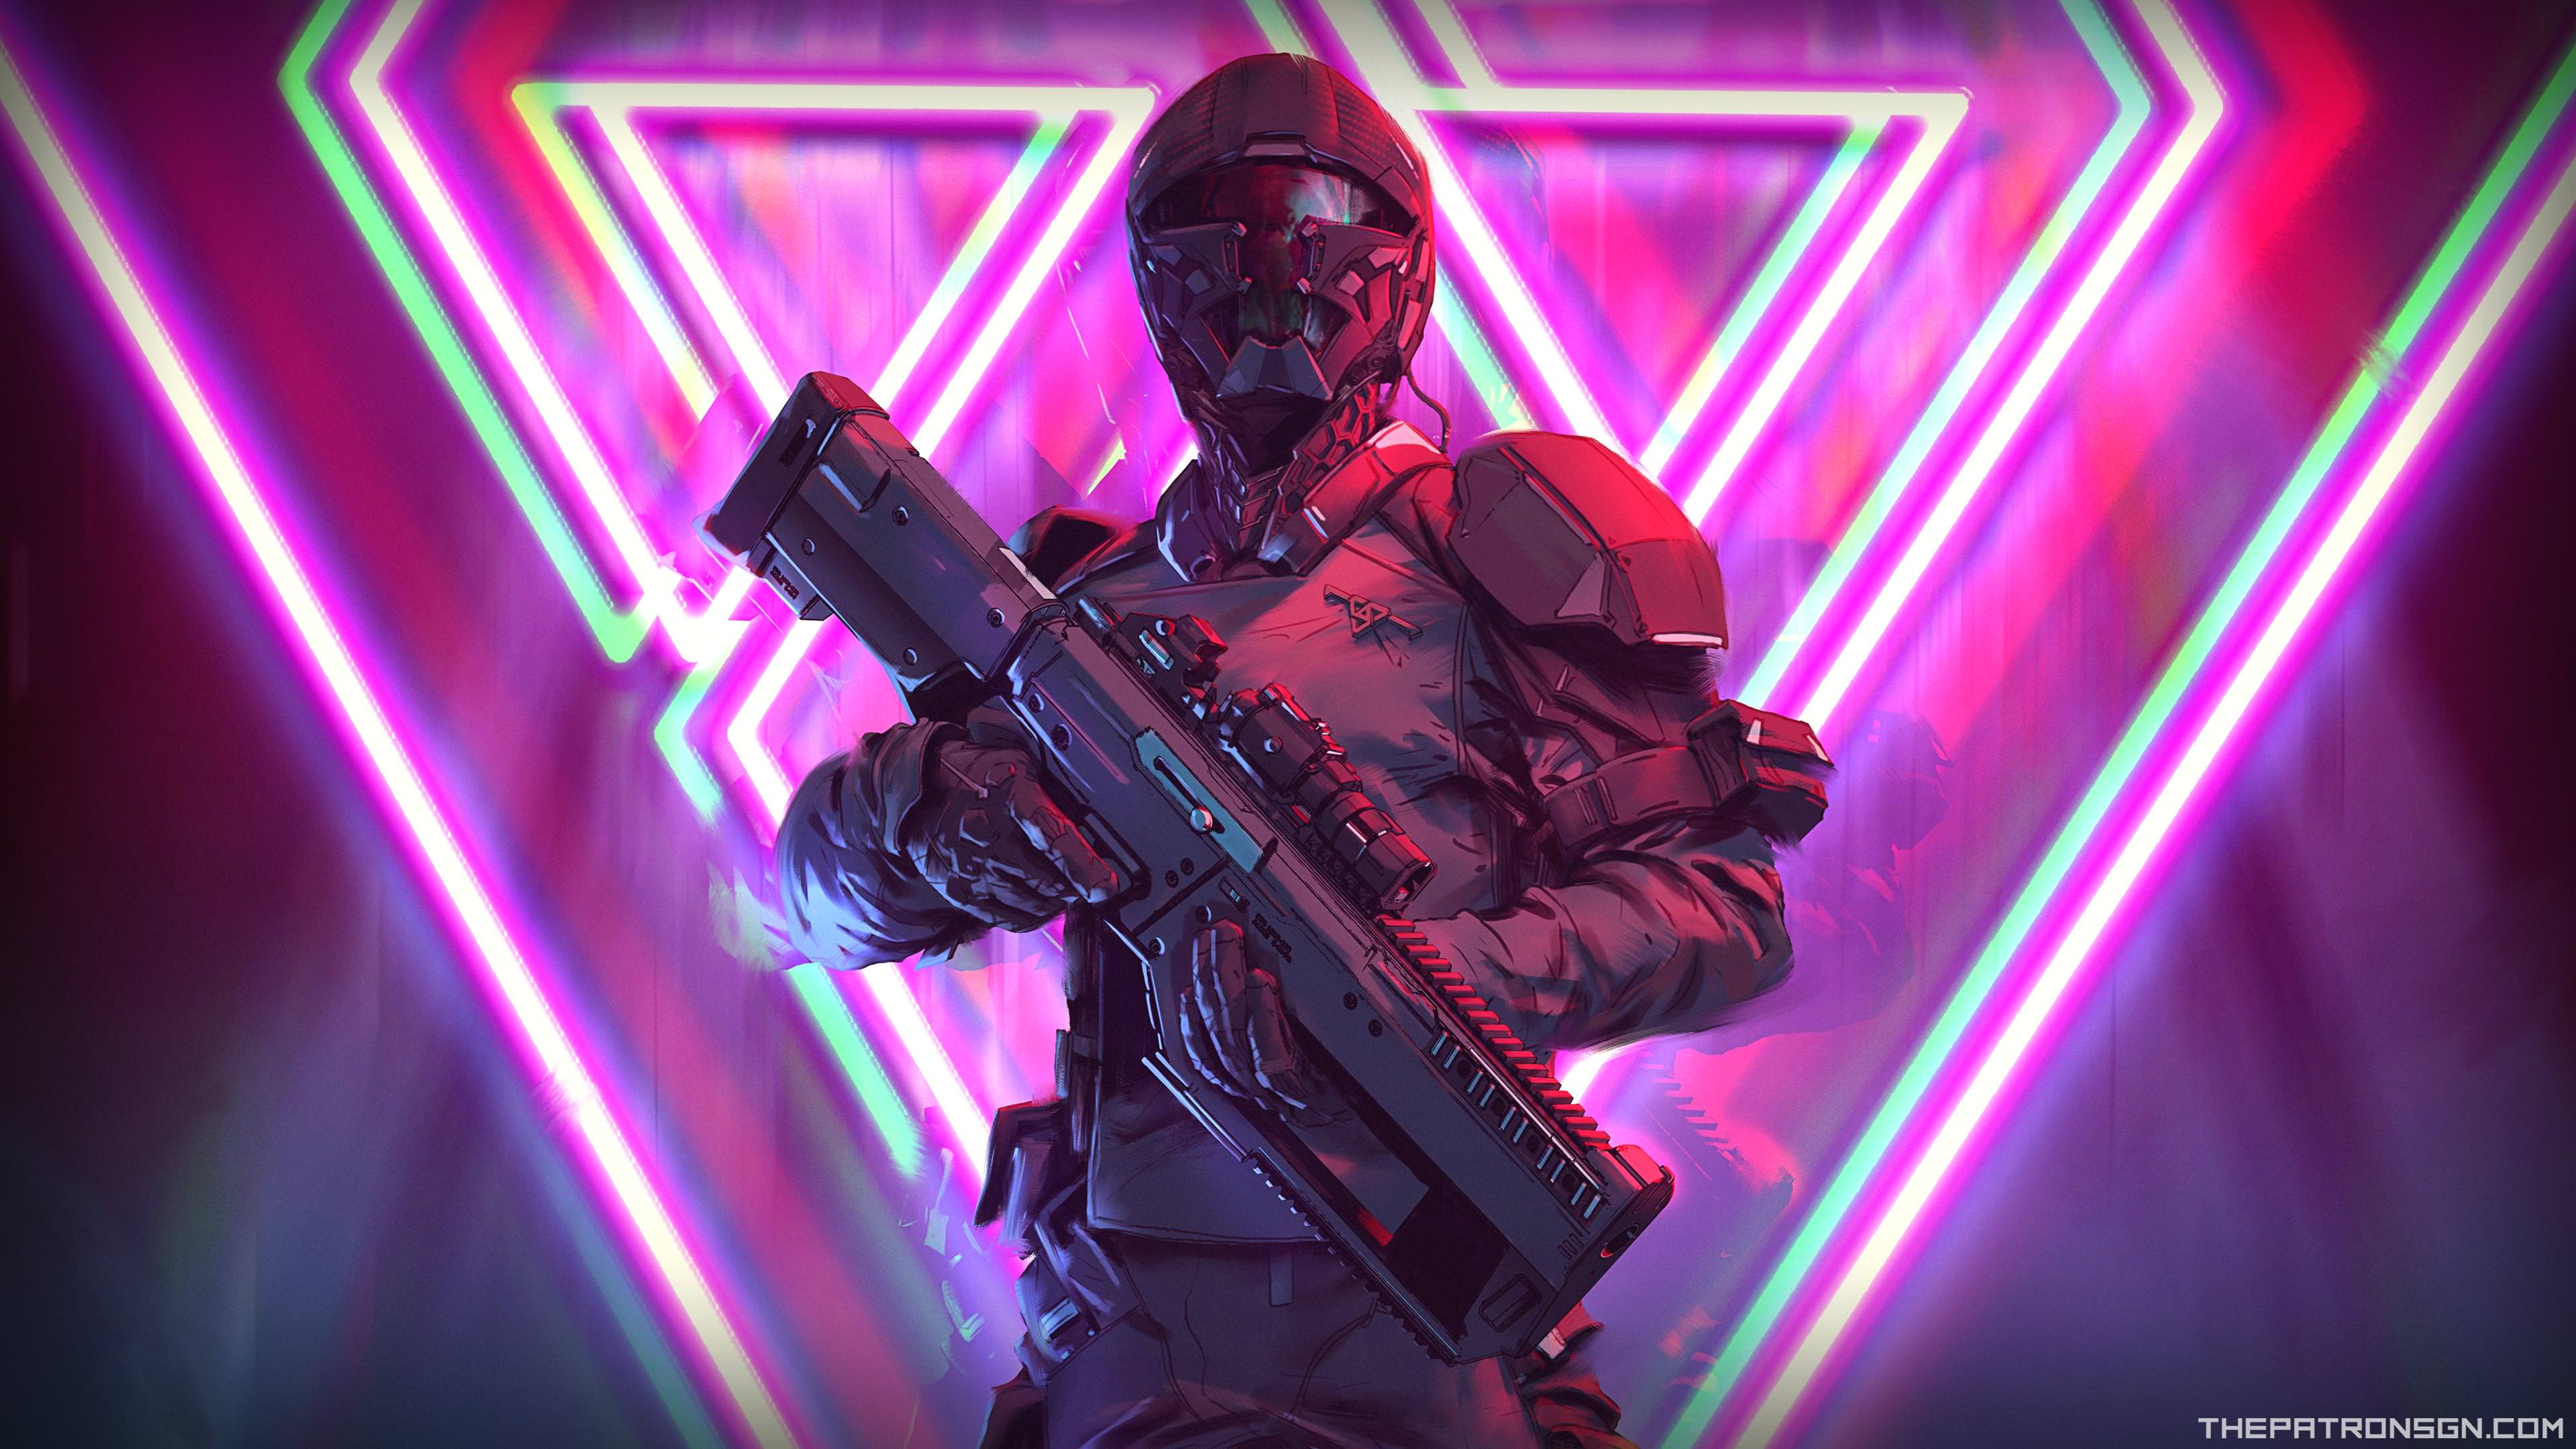 Neon Weapon Soldier Science Fiction 4k, HD Artist, 4k ...